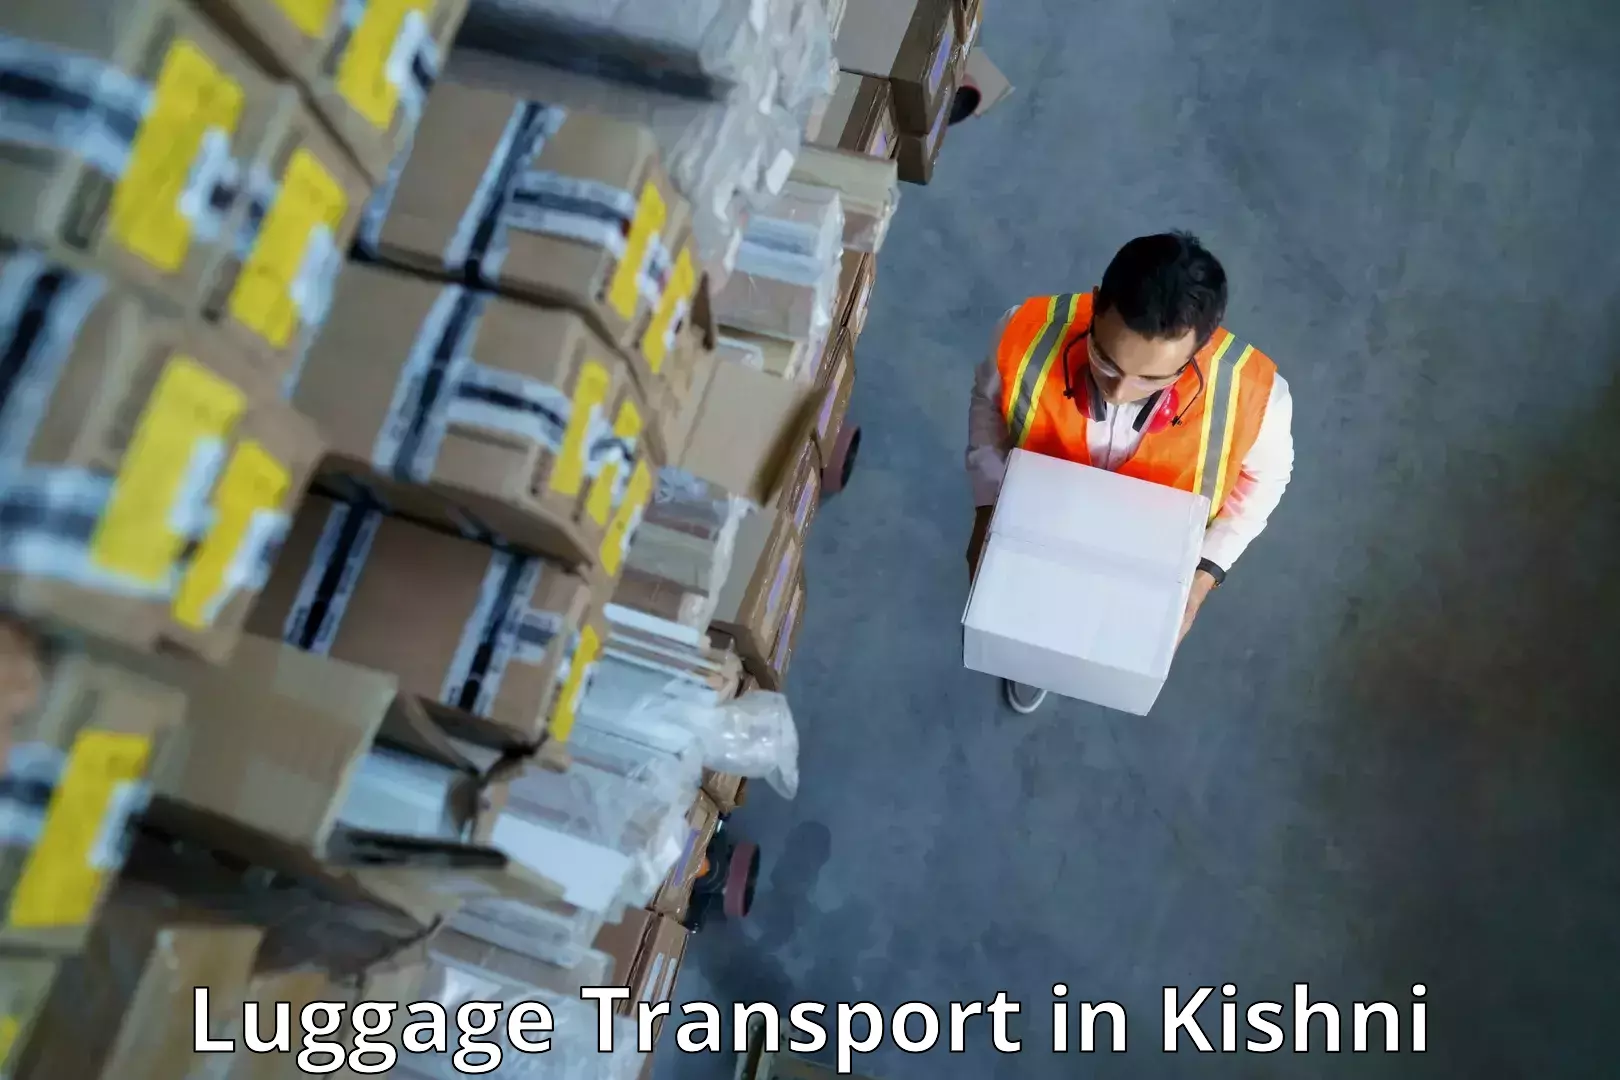 Luggage shipping consultation in Kishni